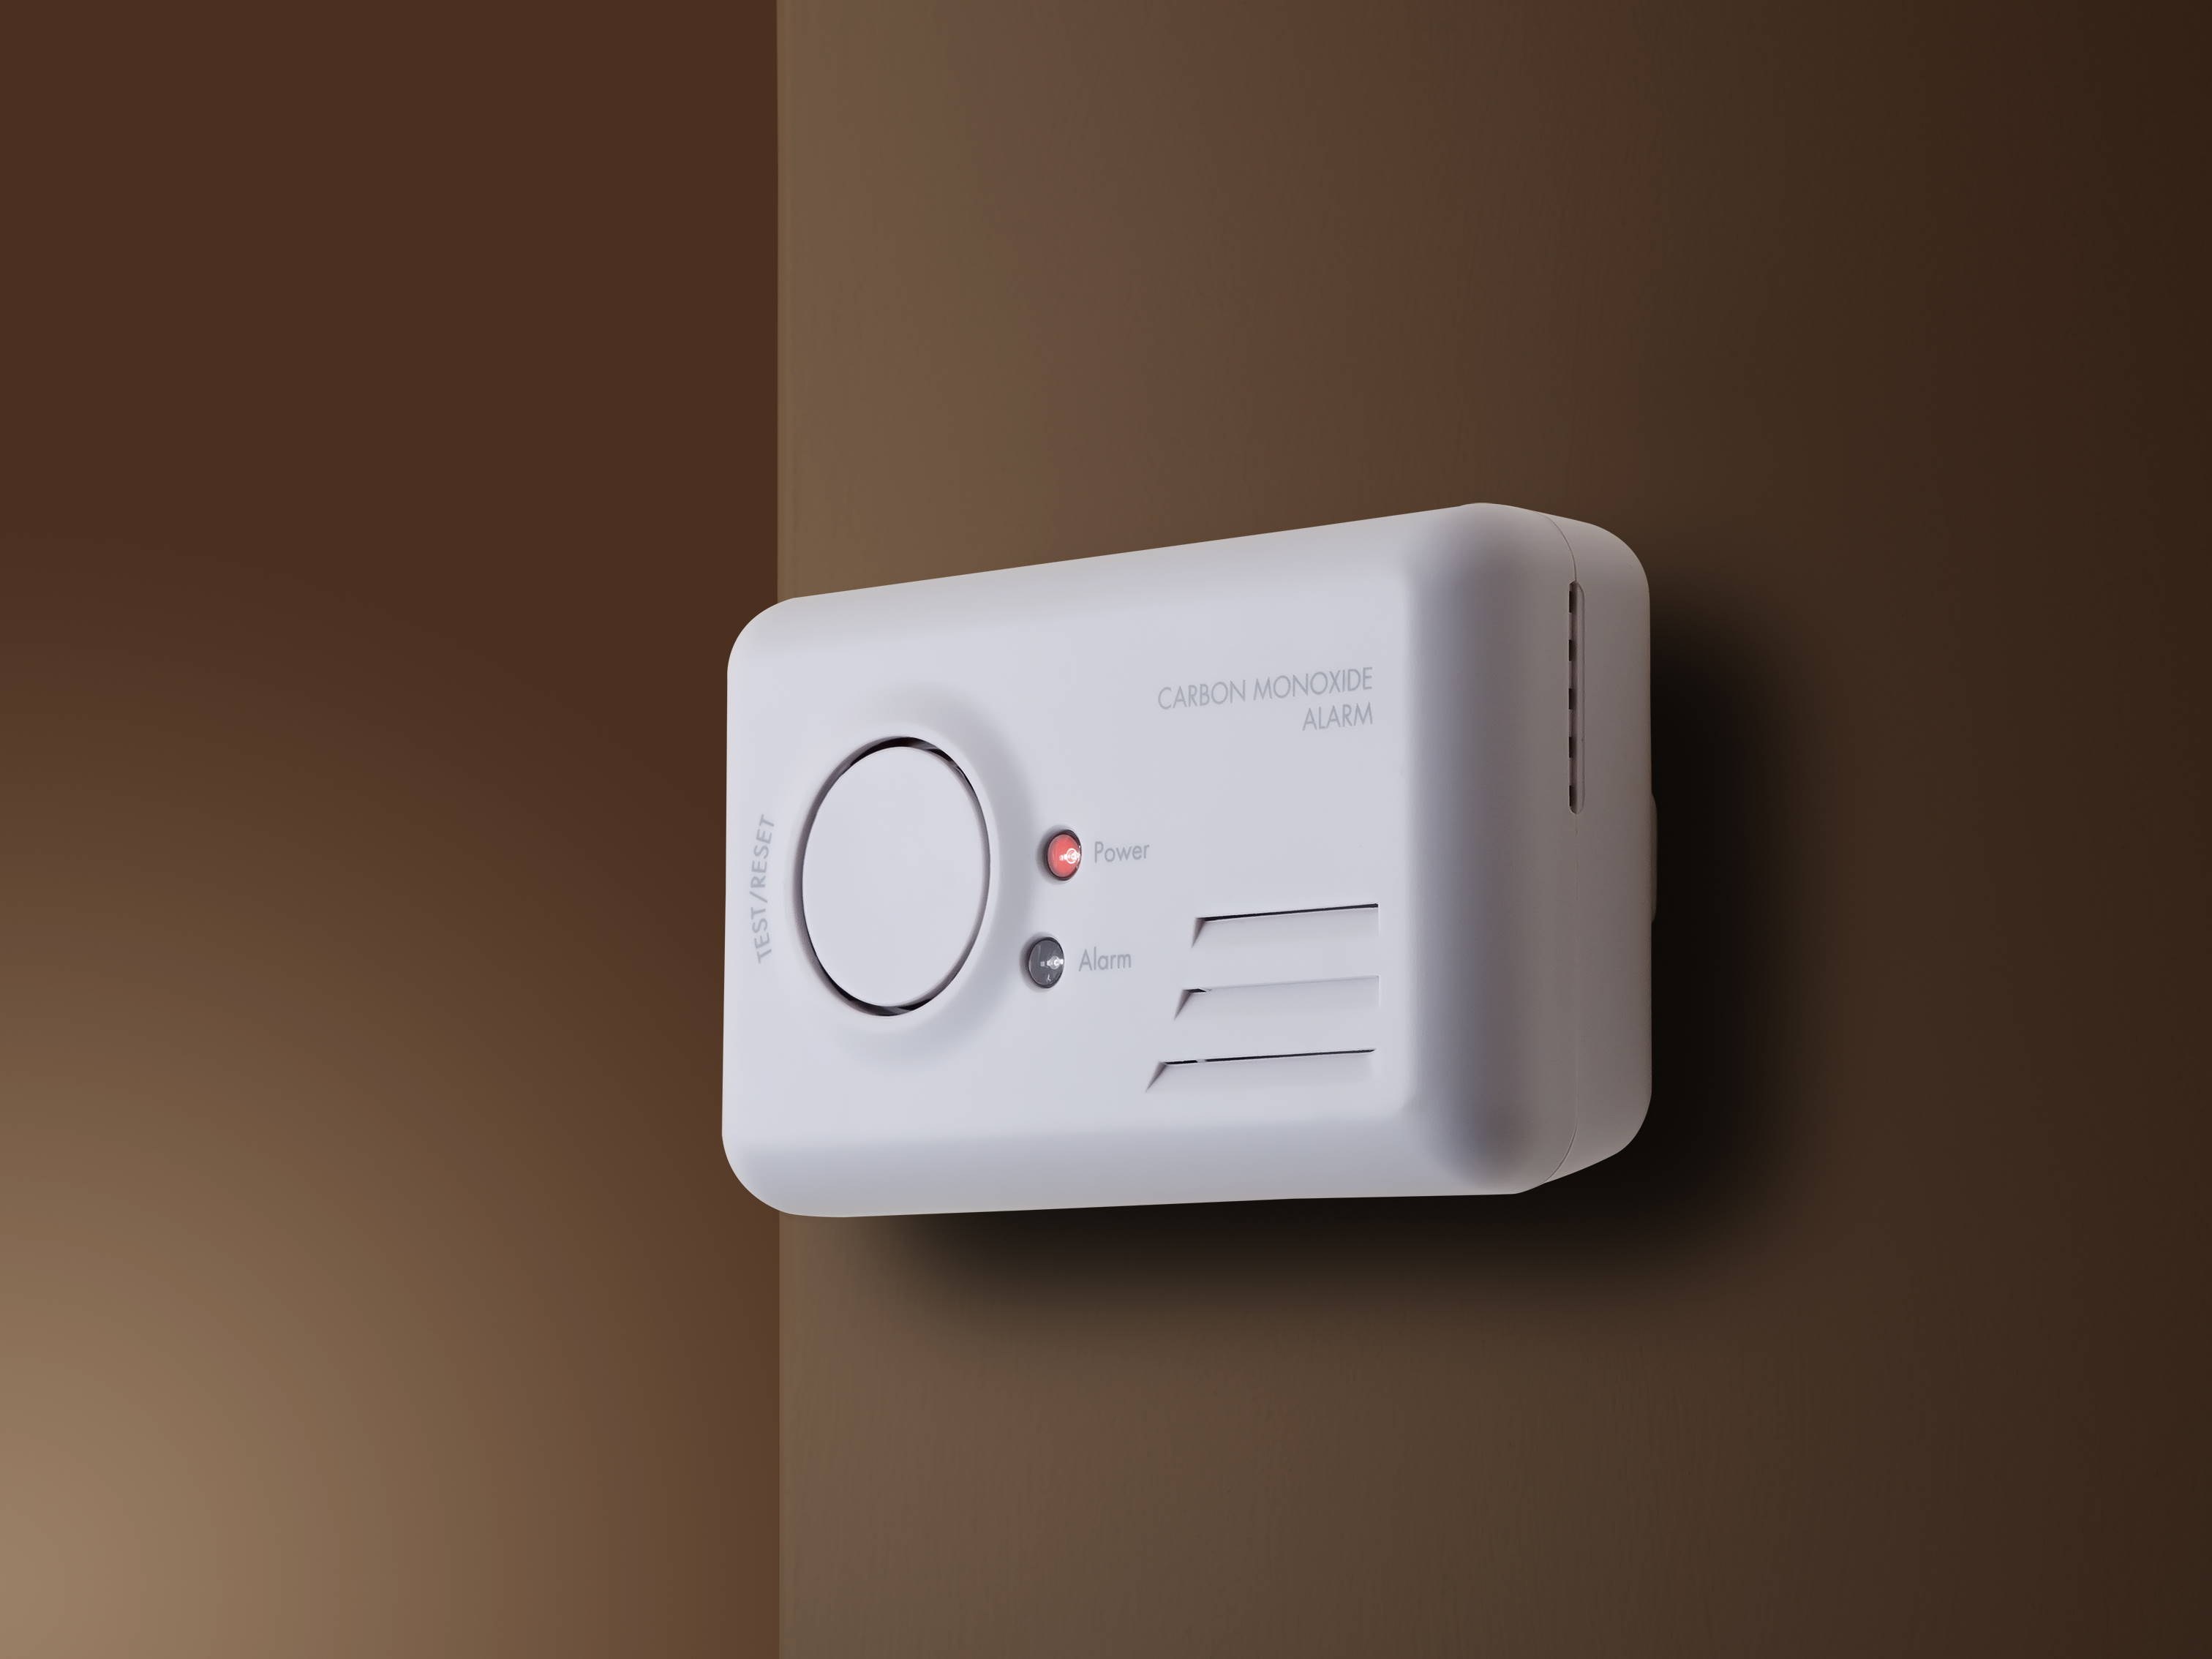 Carbon monoxide detectors: Your questions answered